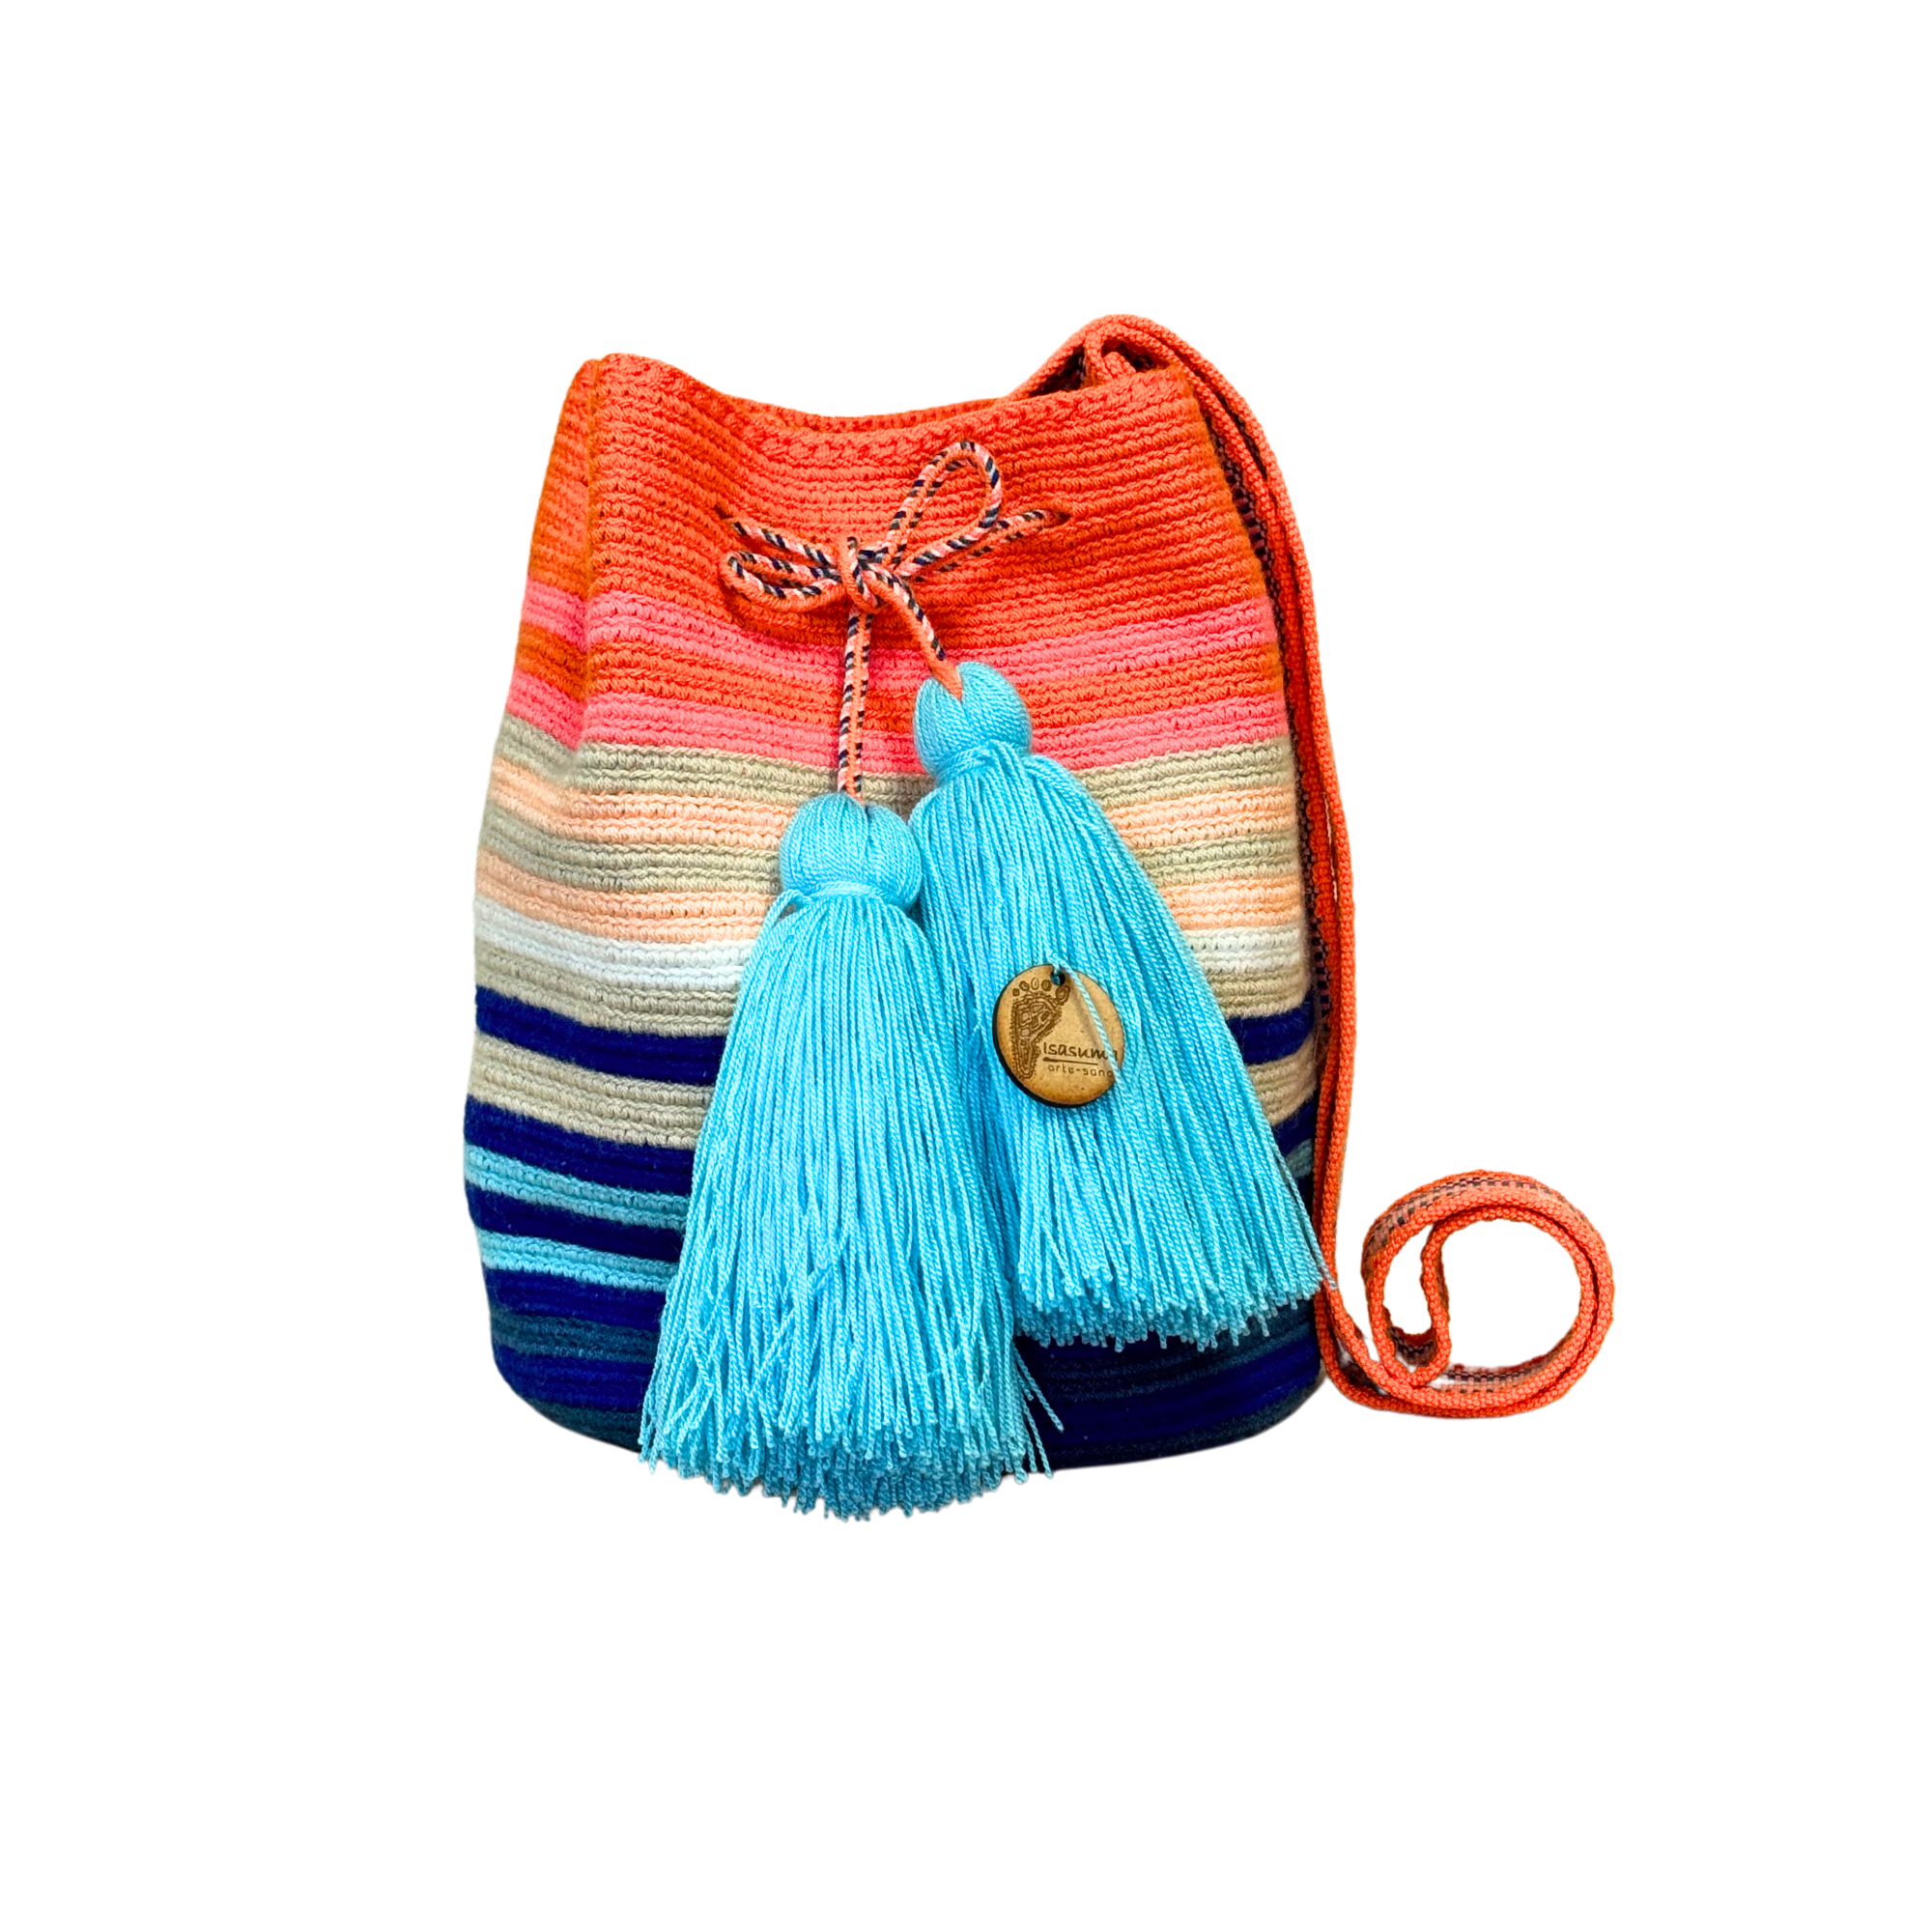 Wayuu mochila bag | Medium Traditional | Solid Strap | Orange beige and blue lines